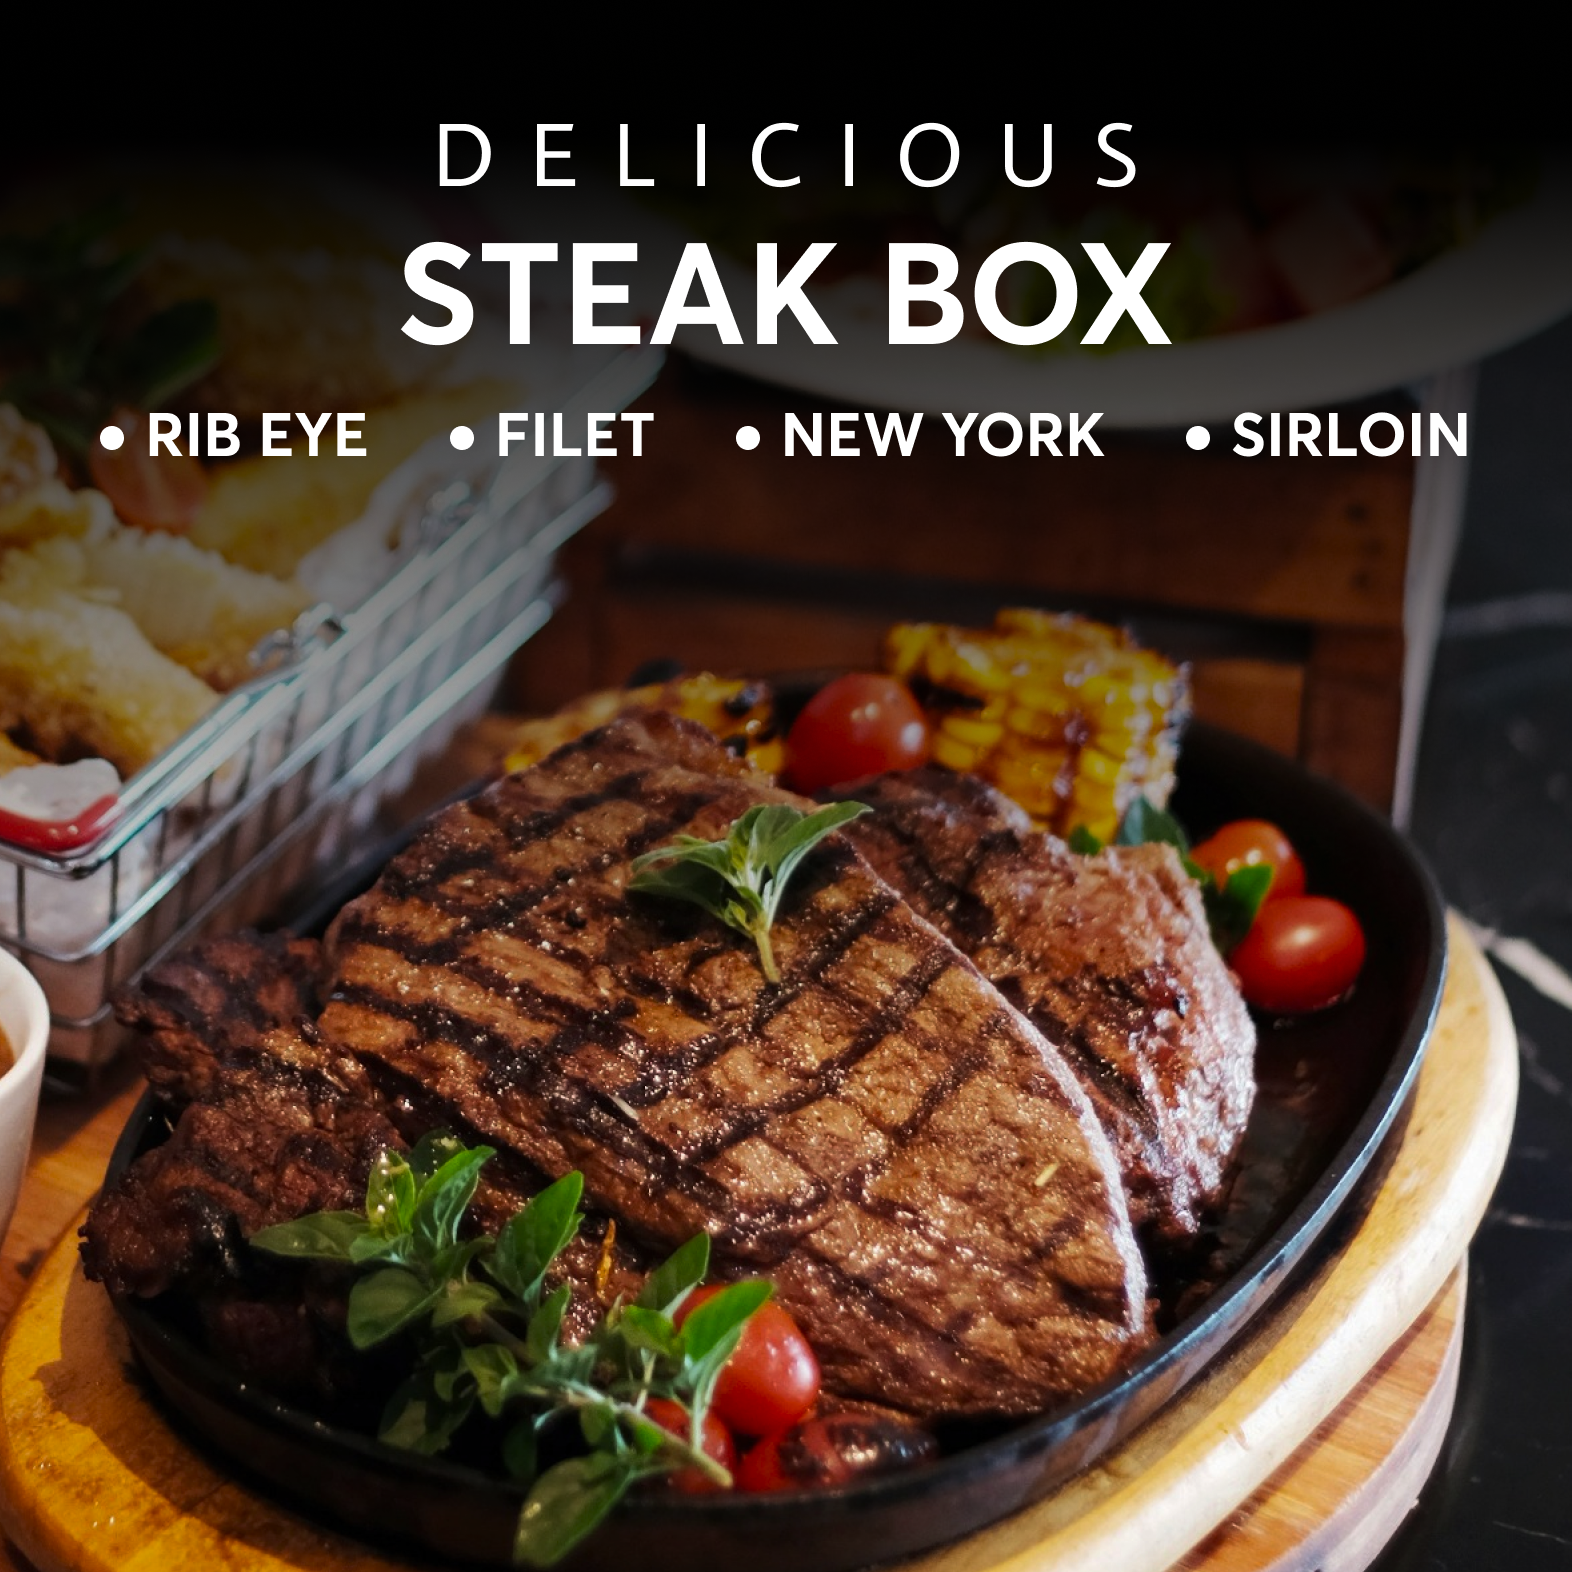 Top Notch ALL Steak Box